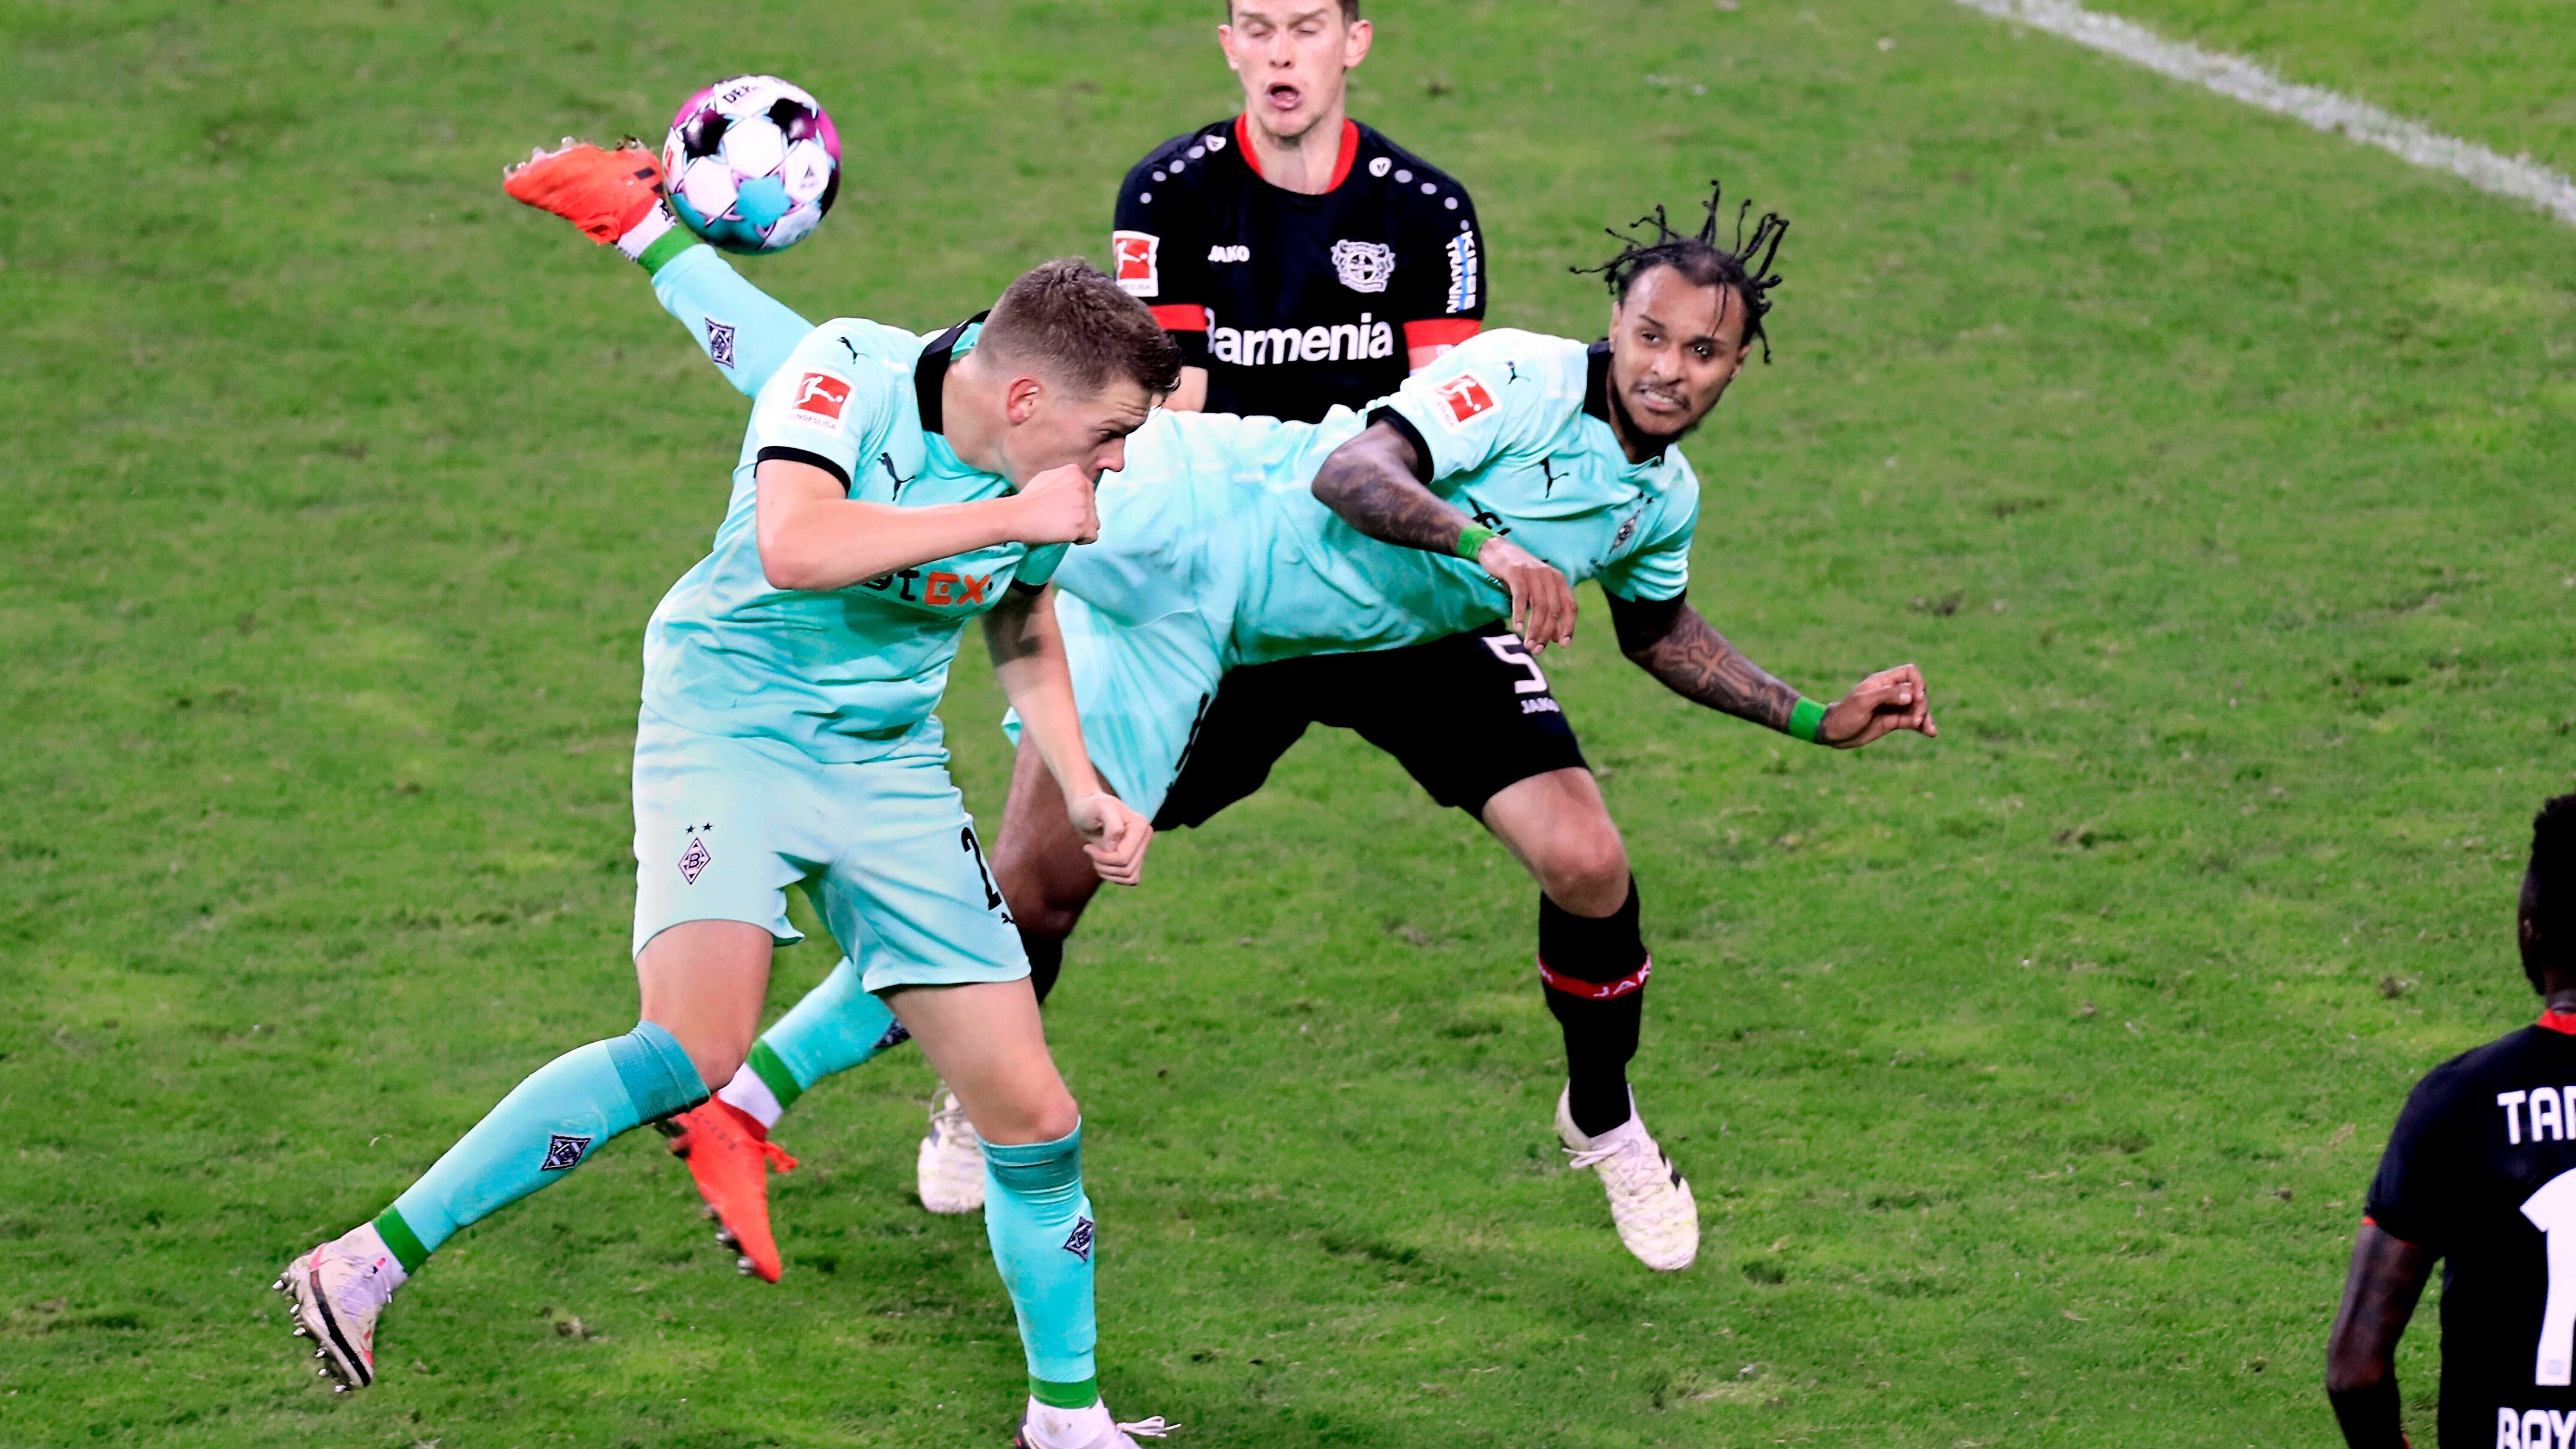 
                <strong>Spiel der Saison: Bayer 04 Leverkusen - Borussia Mönchengladbach 4:3</strong><br>
                08. November 2020, 7. Spieltag der Bundesliga-Saison, Derby-Time. Und diese Partie hielt genau, was sich viele Fans von einem Derby erhofft hatten. In der ersten Halbzeit lieferten sich Lars Stindl auf Gladbacher und Lucas Alario auf Leverkusener Seite zunächst ein perönliches Duell. Stindl traf zur Führung nach 18 Minuten, Alario glich keine zehn Minuten später aus. Stindl erhöhte auf 2:1 in Minute 30, Alario netzte vor der Pause zum 2:2. Nach dem Seitenwechsel blieb die Werkself dann am Drücker und Bailey und Baumgartlinger erhöhten bis zur 82. Minute auf 4:2. Verrückter Schlusspunkt der Partie war dann das Kunststück von Valentino Lazaro (Foto). Nach einer Hereingabe in den Sechzehner setzte der Österreicher zum Scorpion-Kick an und das Leder senkte sich über Bayer-Keeper Hradecky ins lange Eck. Für viele das Tor des Jahres. 
              